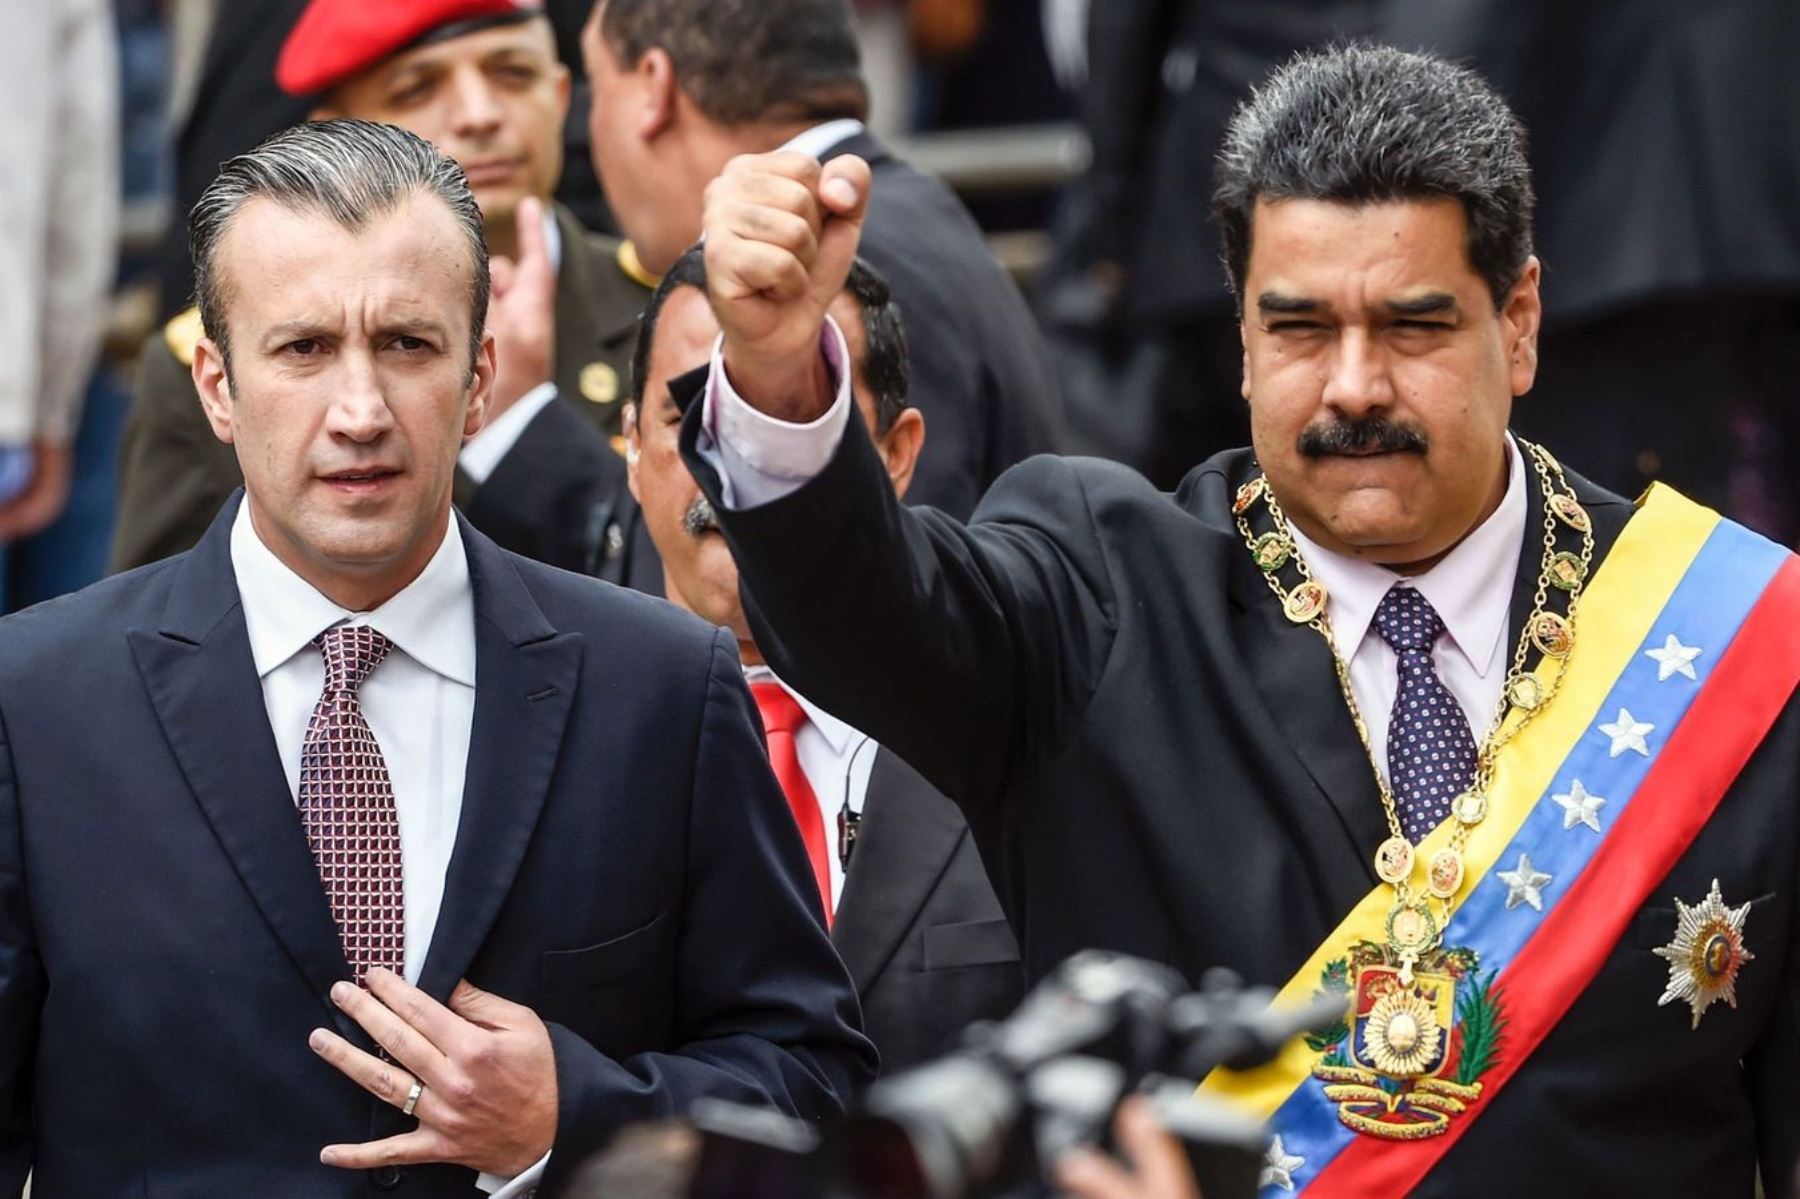 Fotografía de archivo donde se aprecia al presidente venezolano Nicolás Maduro y el entonces vicepresidente Tarek El Aissami. Foto: AFP